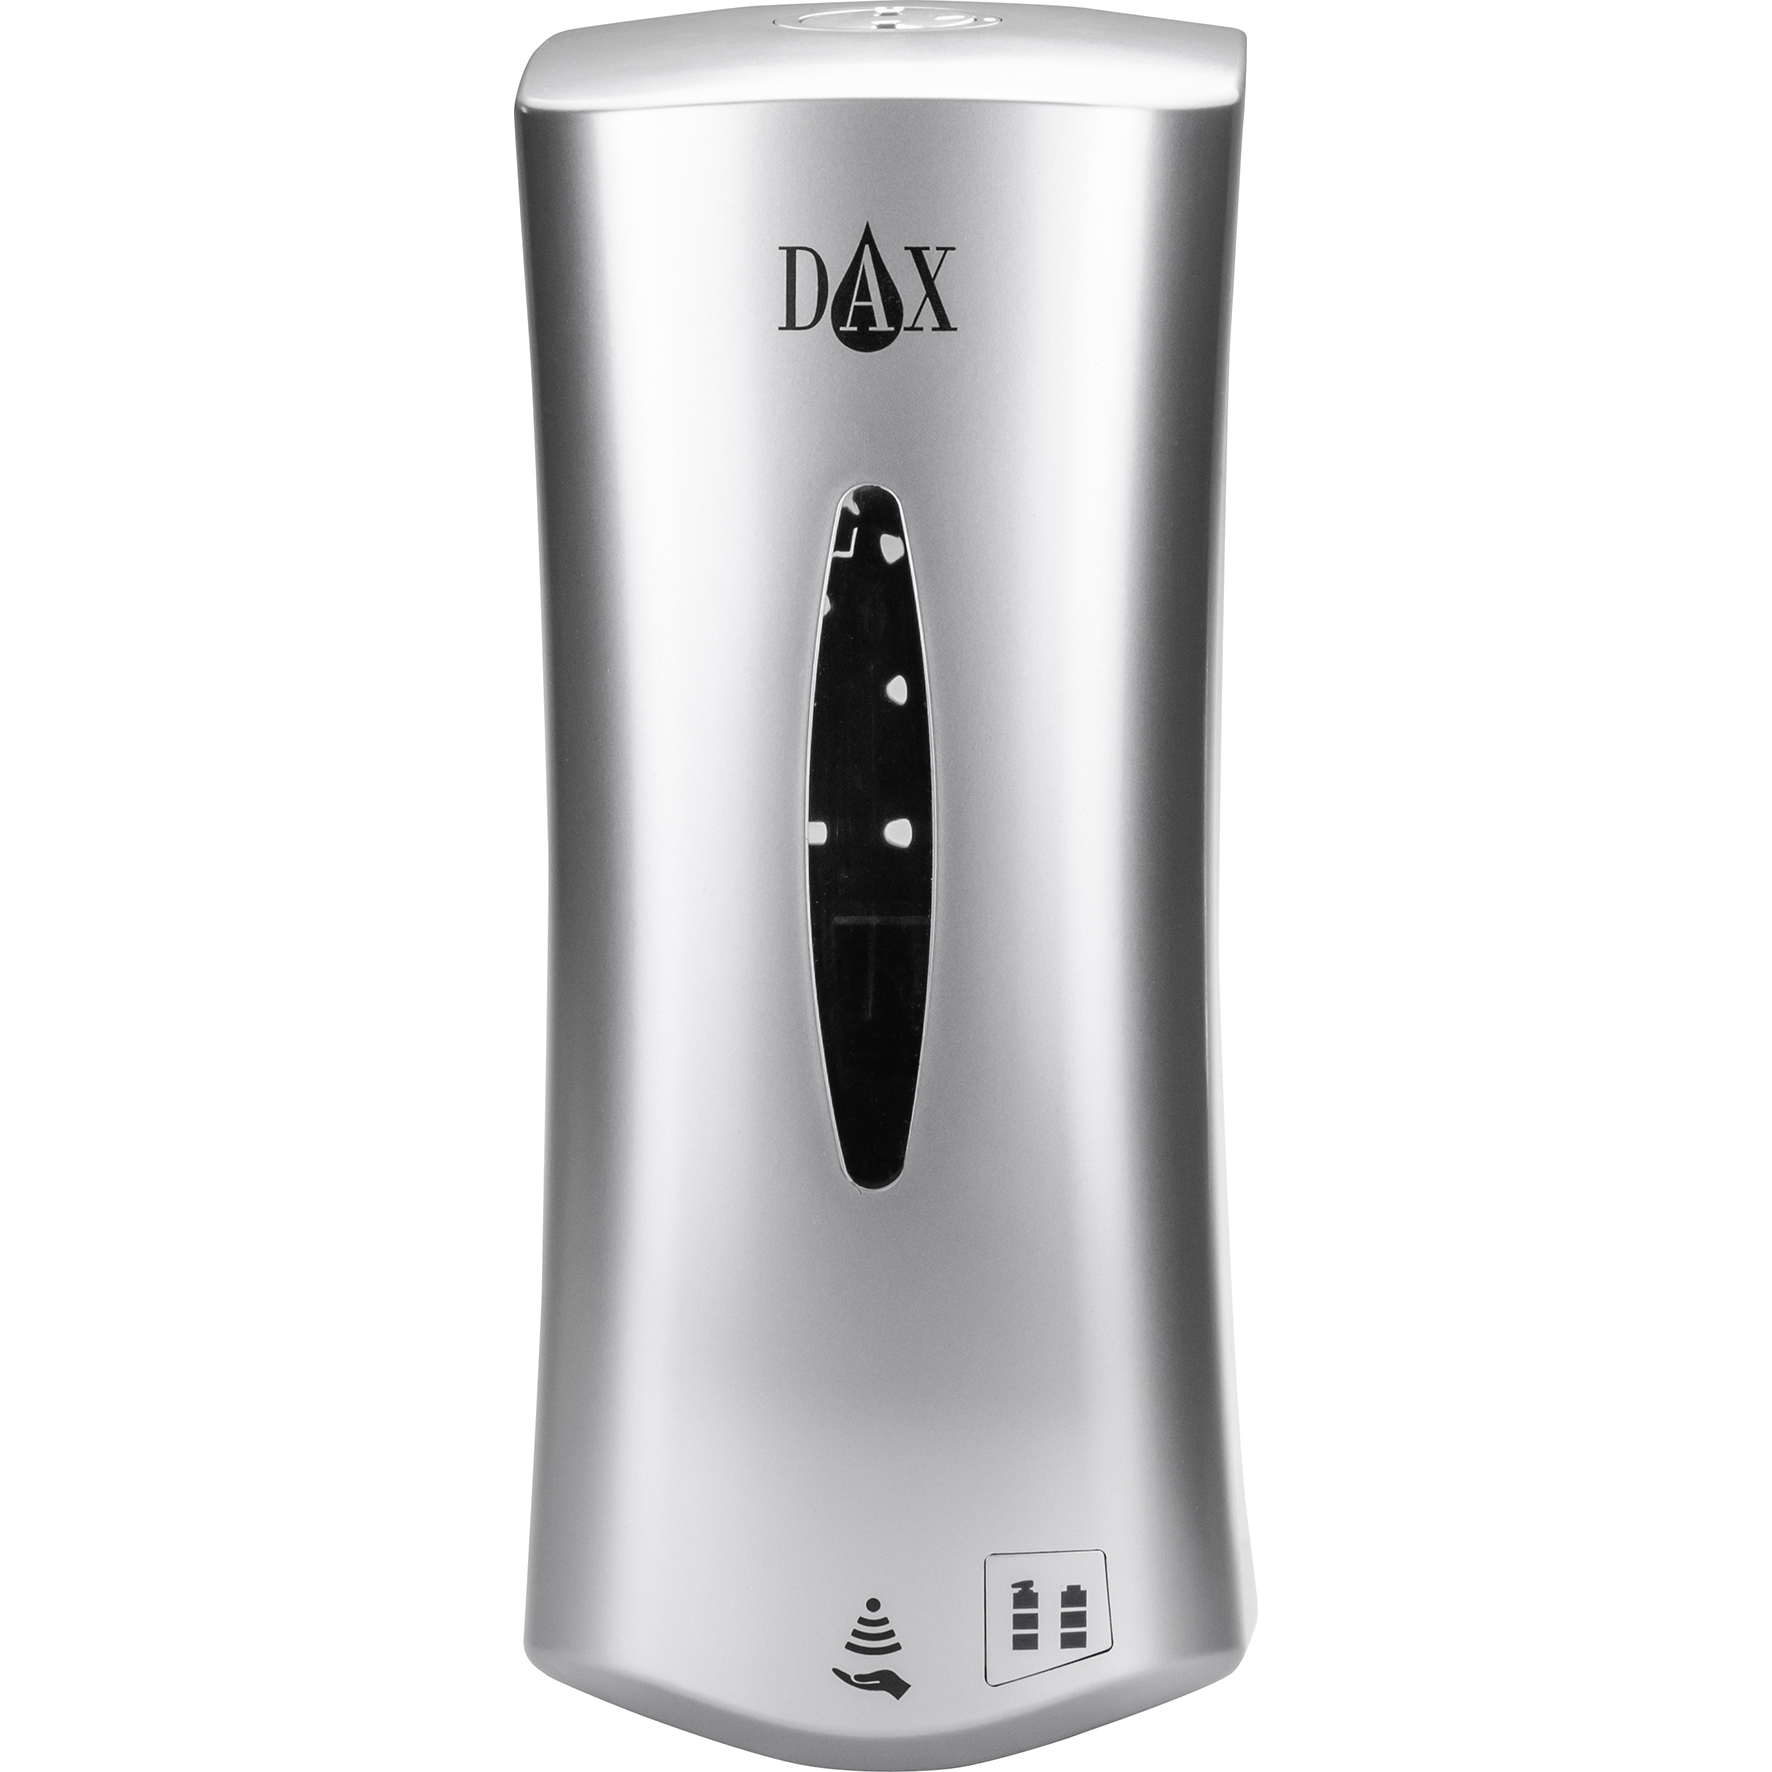 [8558153] DAX SMART Aut. dispenser, grå